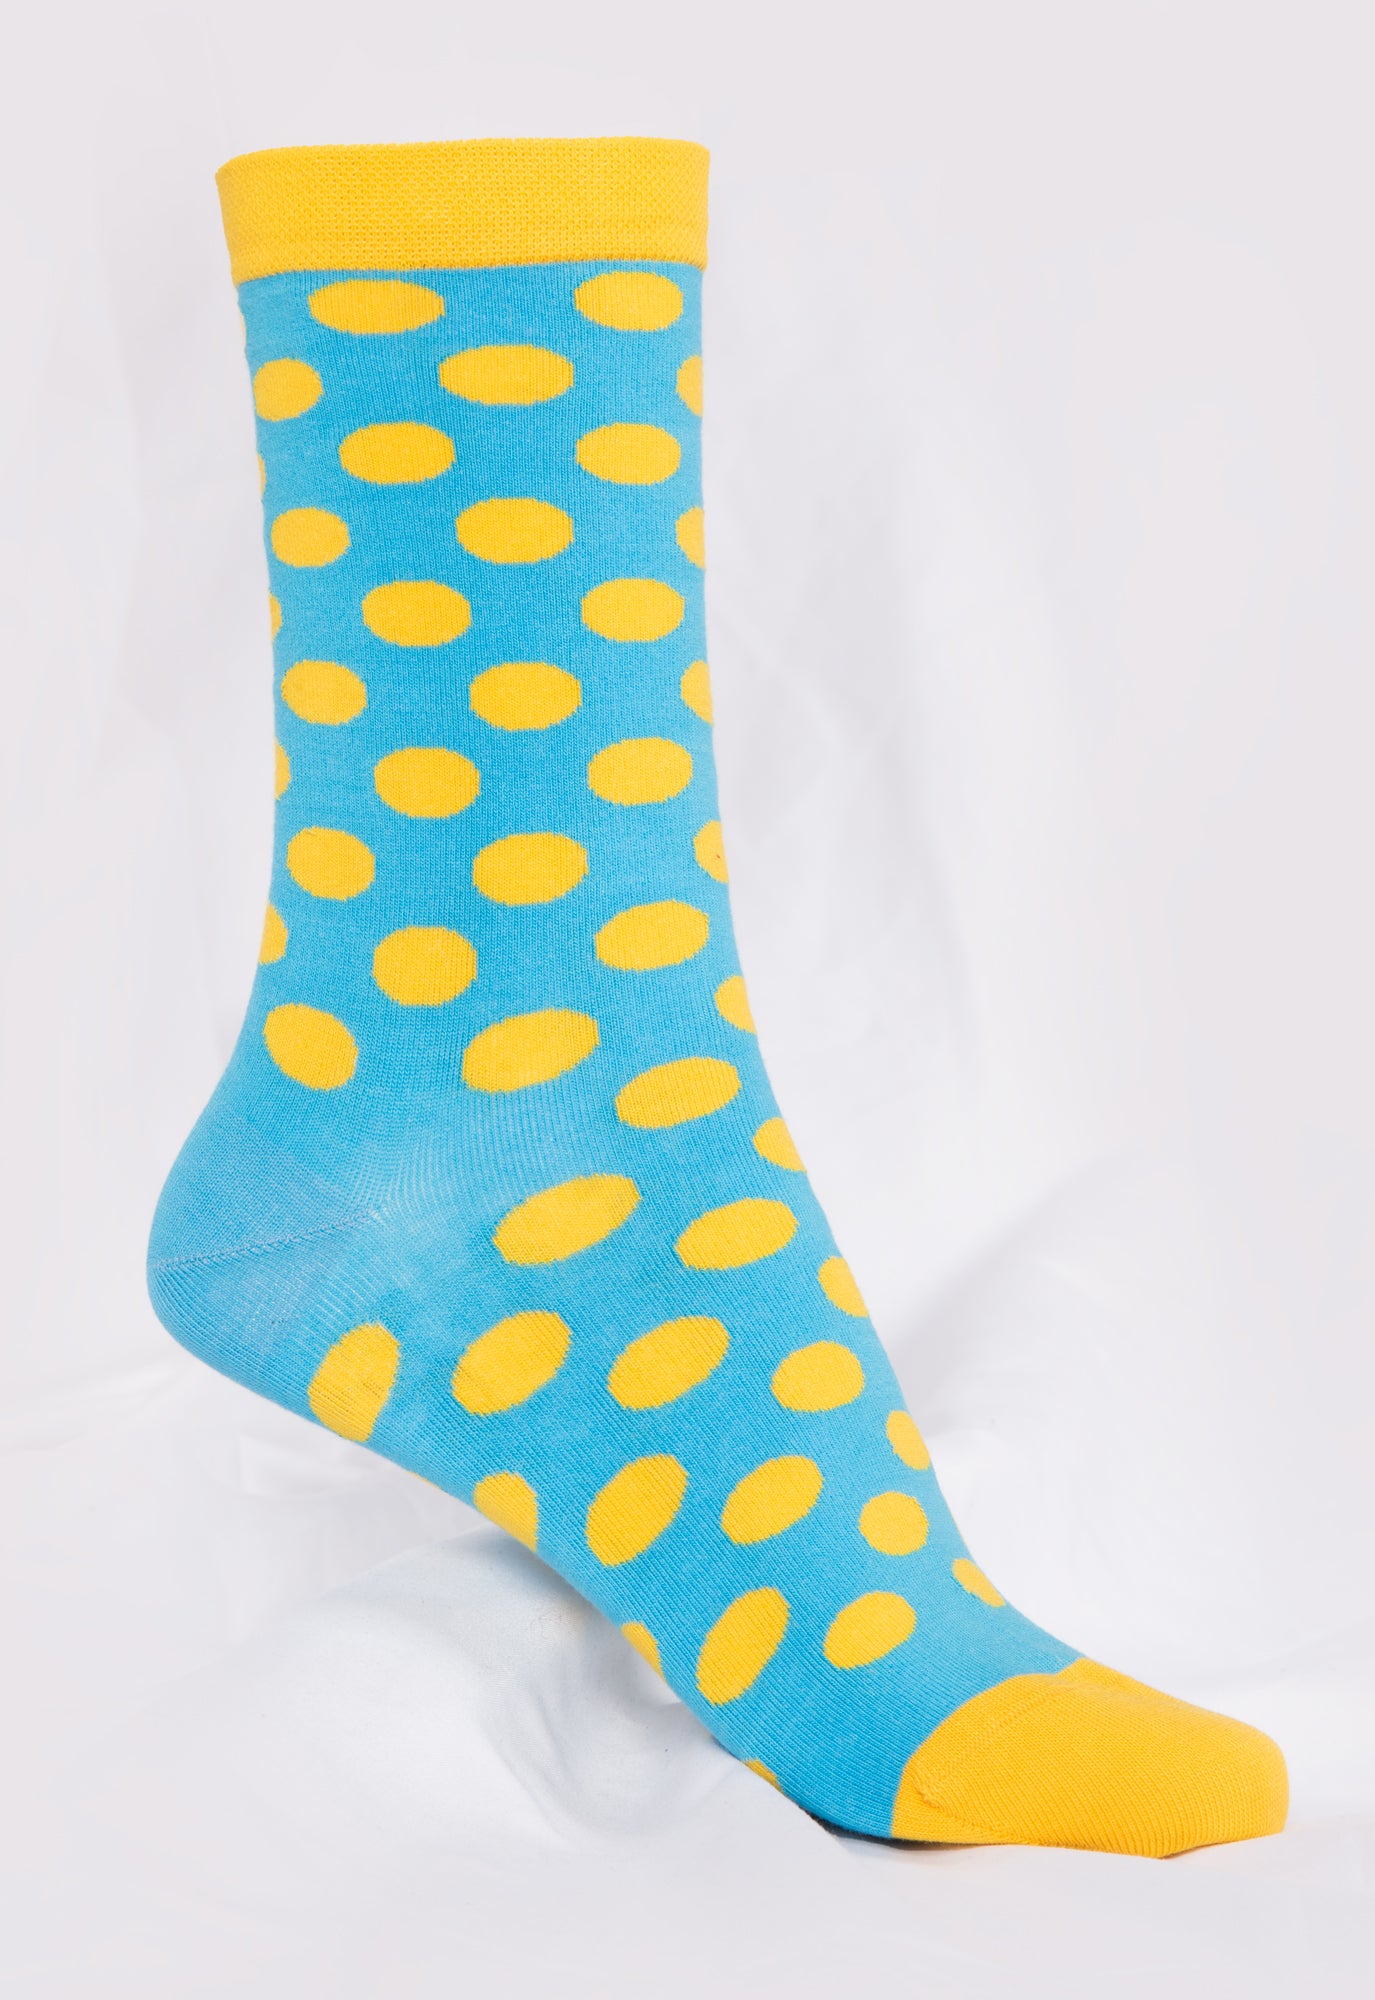 Socken aus Biobaumwollemix - Yofi Tofi Dots